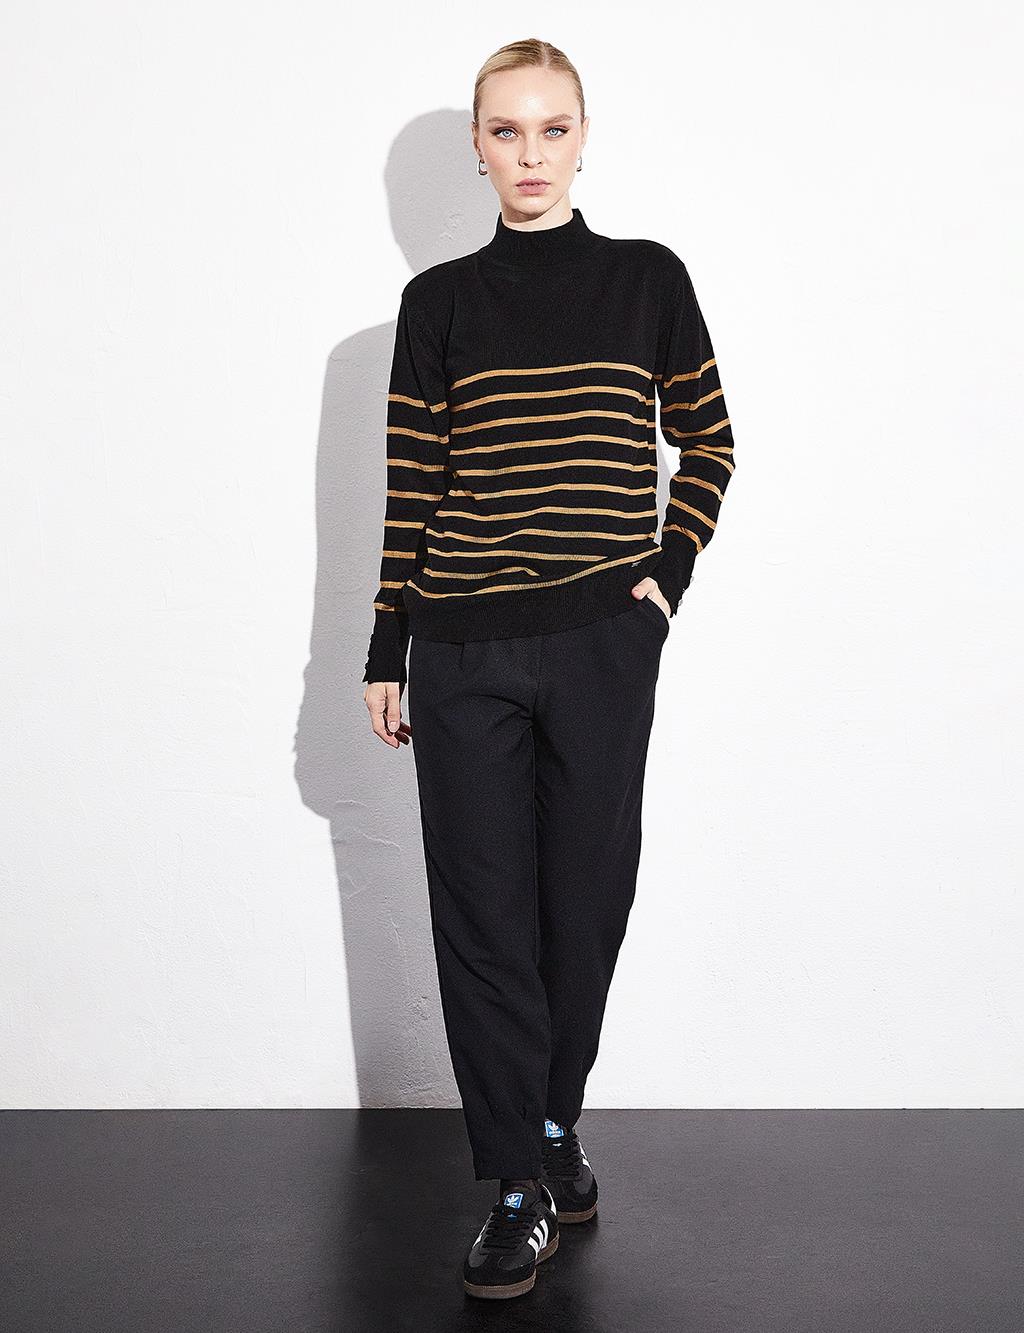 Turtleneck Striped Knitwear Blouse Black Beige